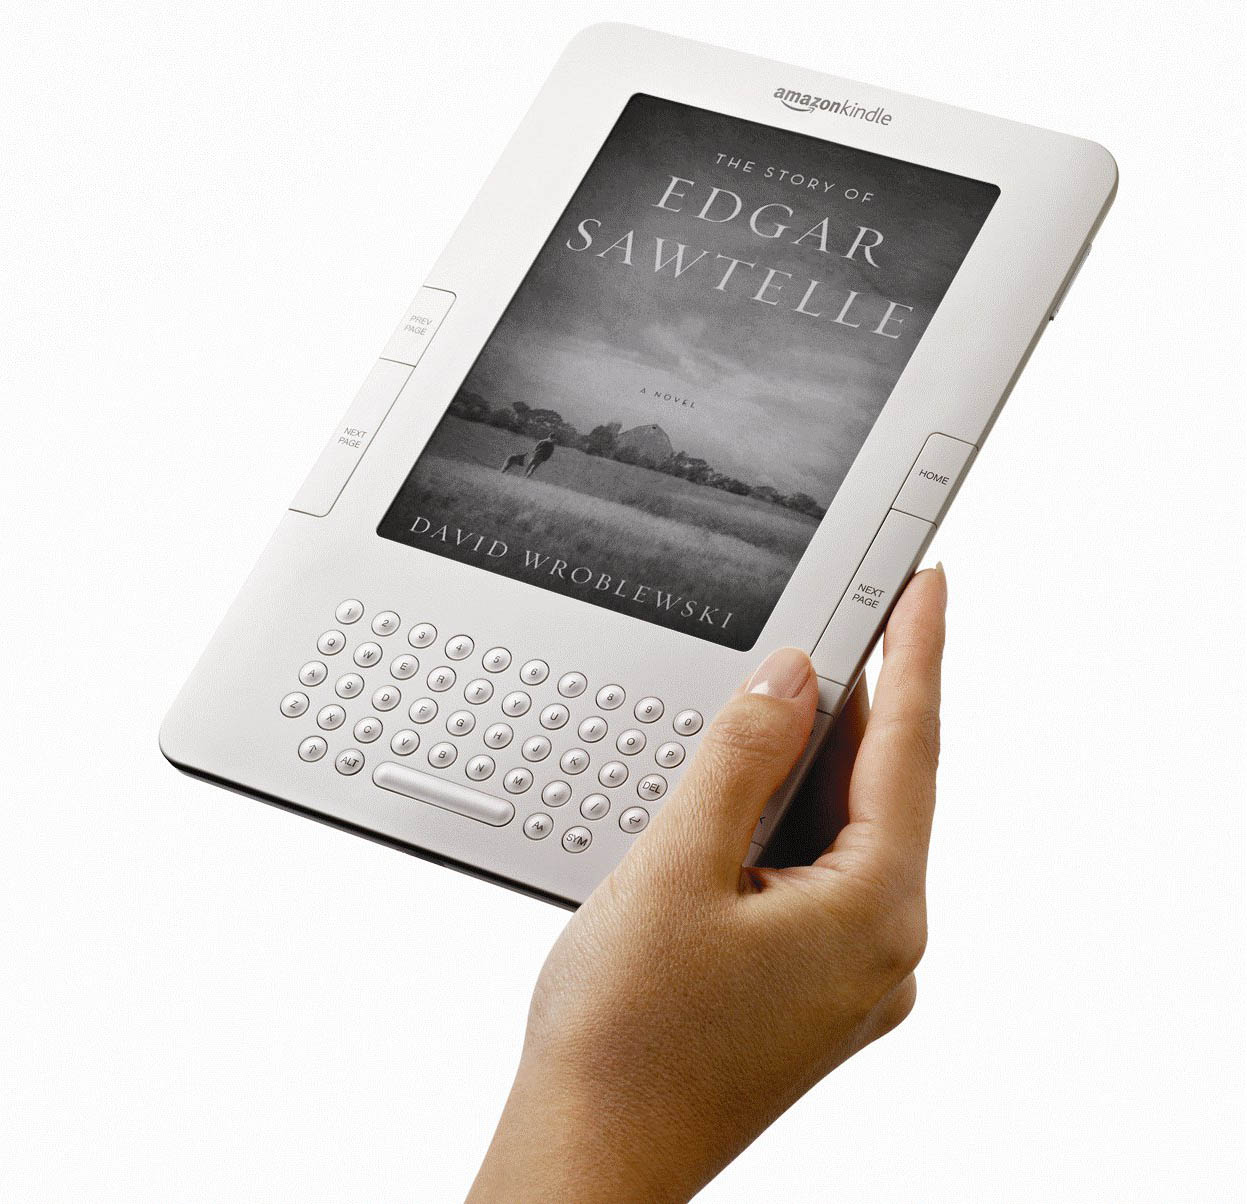 Электронные книги гаджет. Электронная книга Amazon Kindle DX. Киндл 3. Amazon Kindle 2. "Kindle DX" чехол.